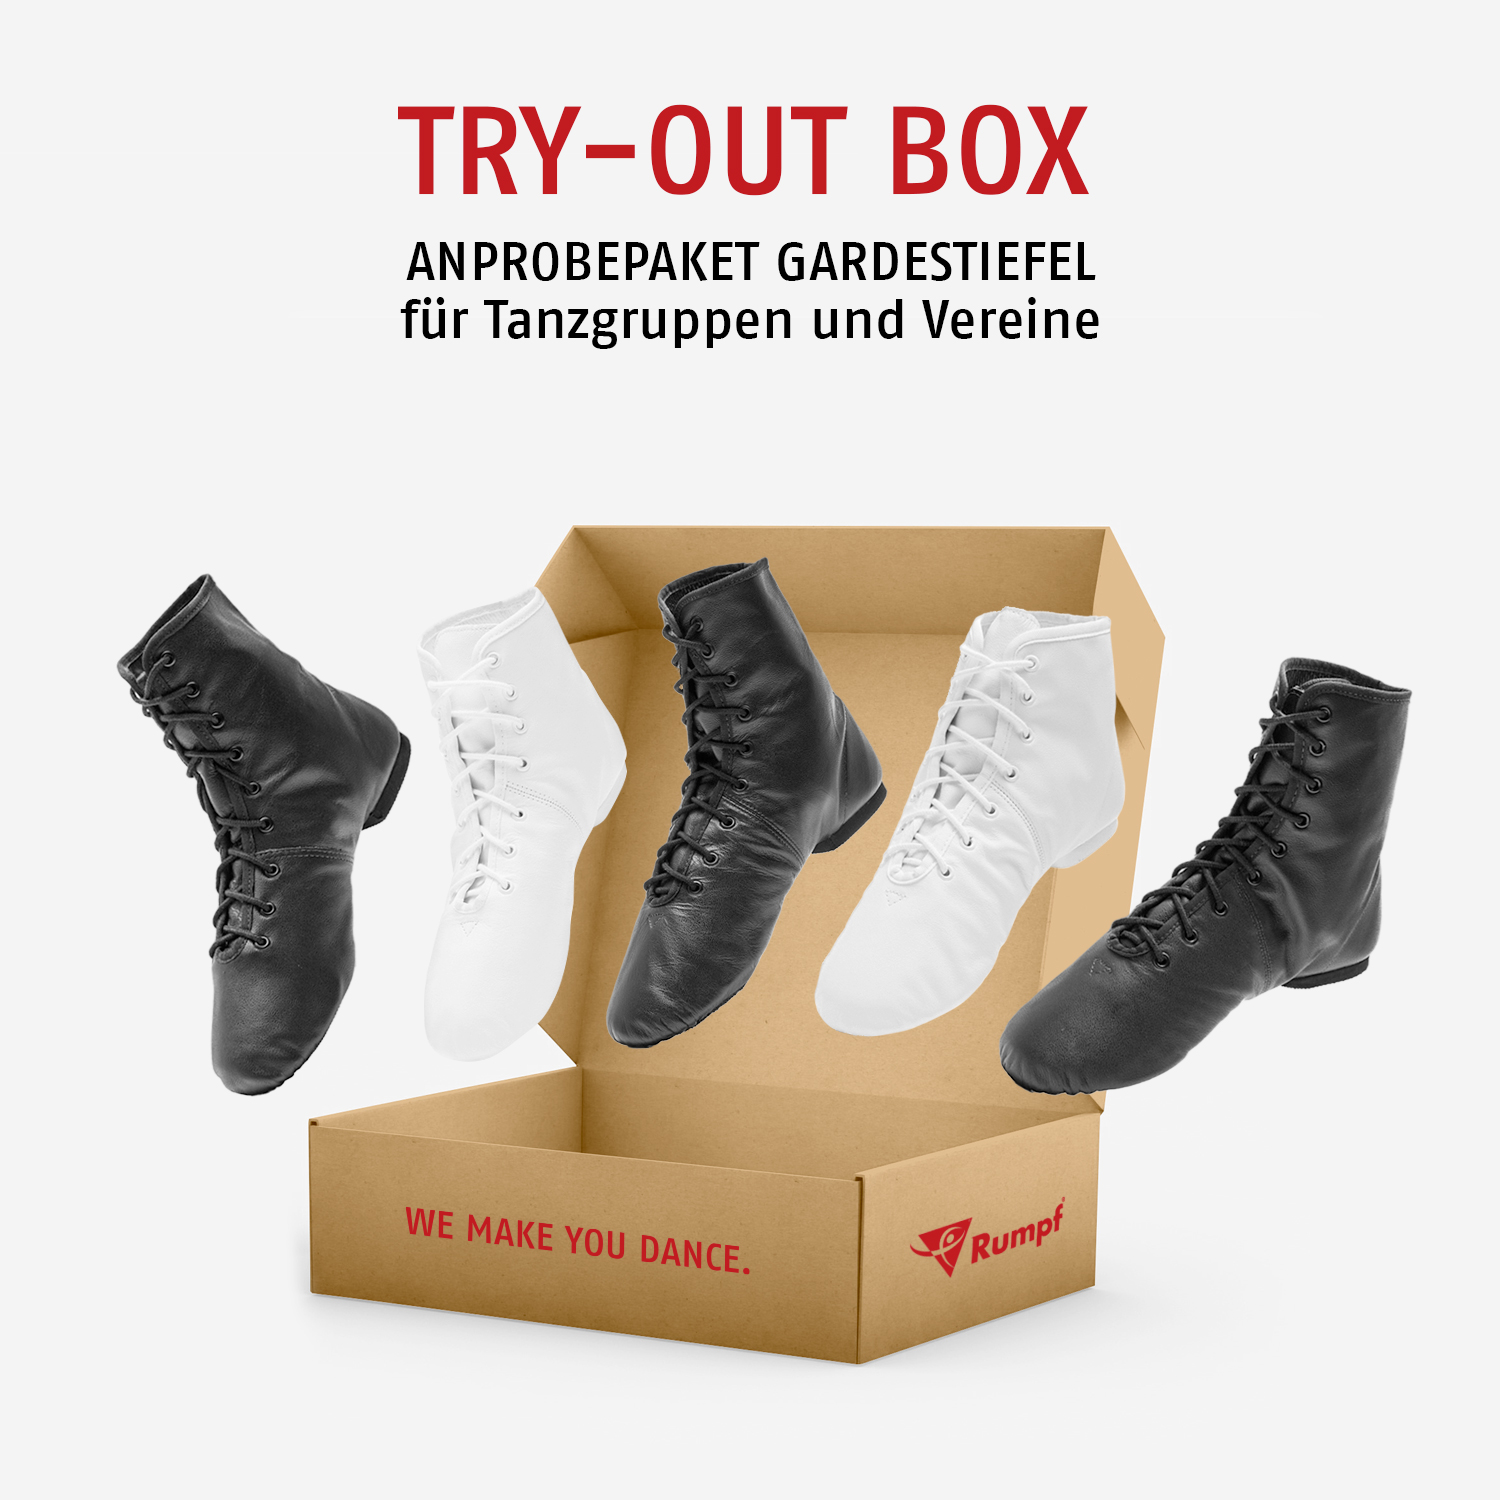 Try-Out Box für Tanzgruppen und Vereine 4120